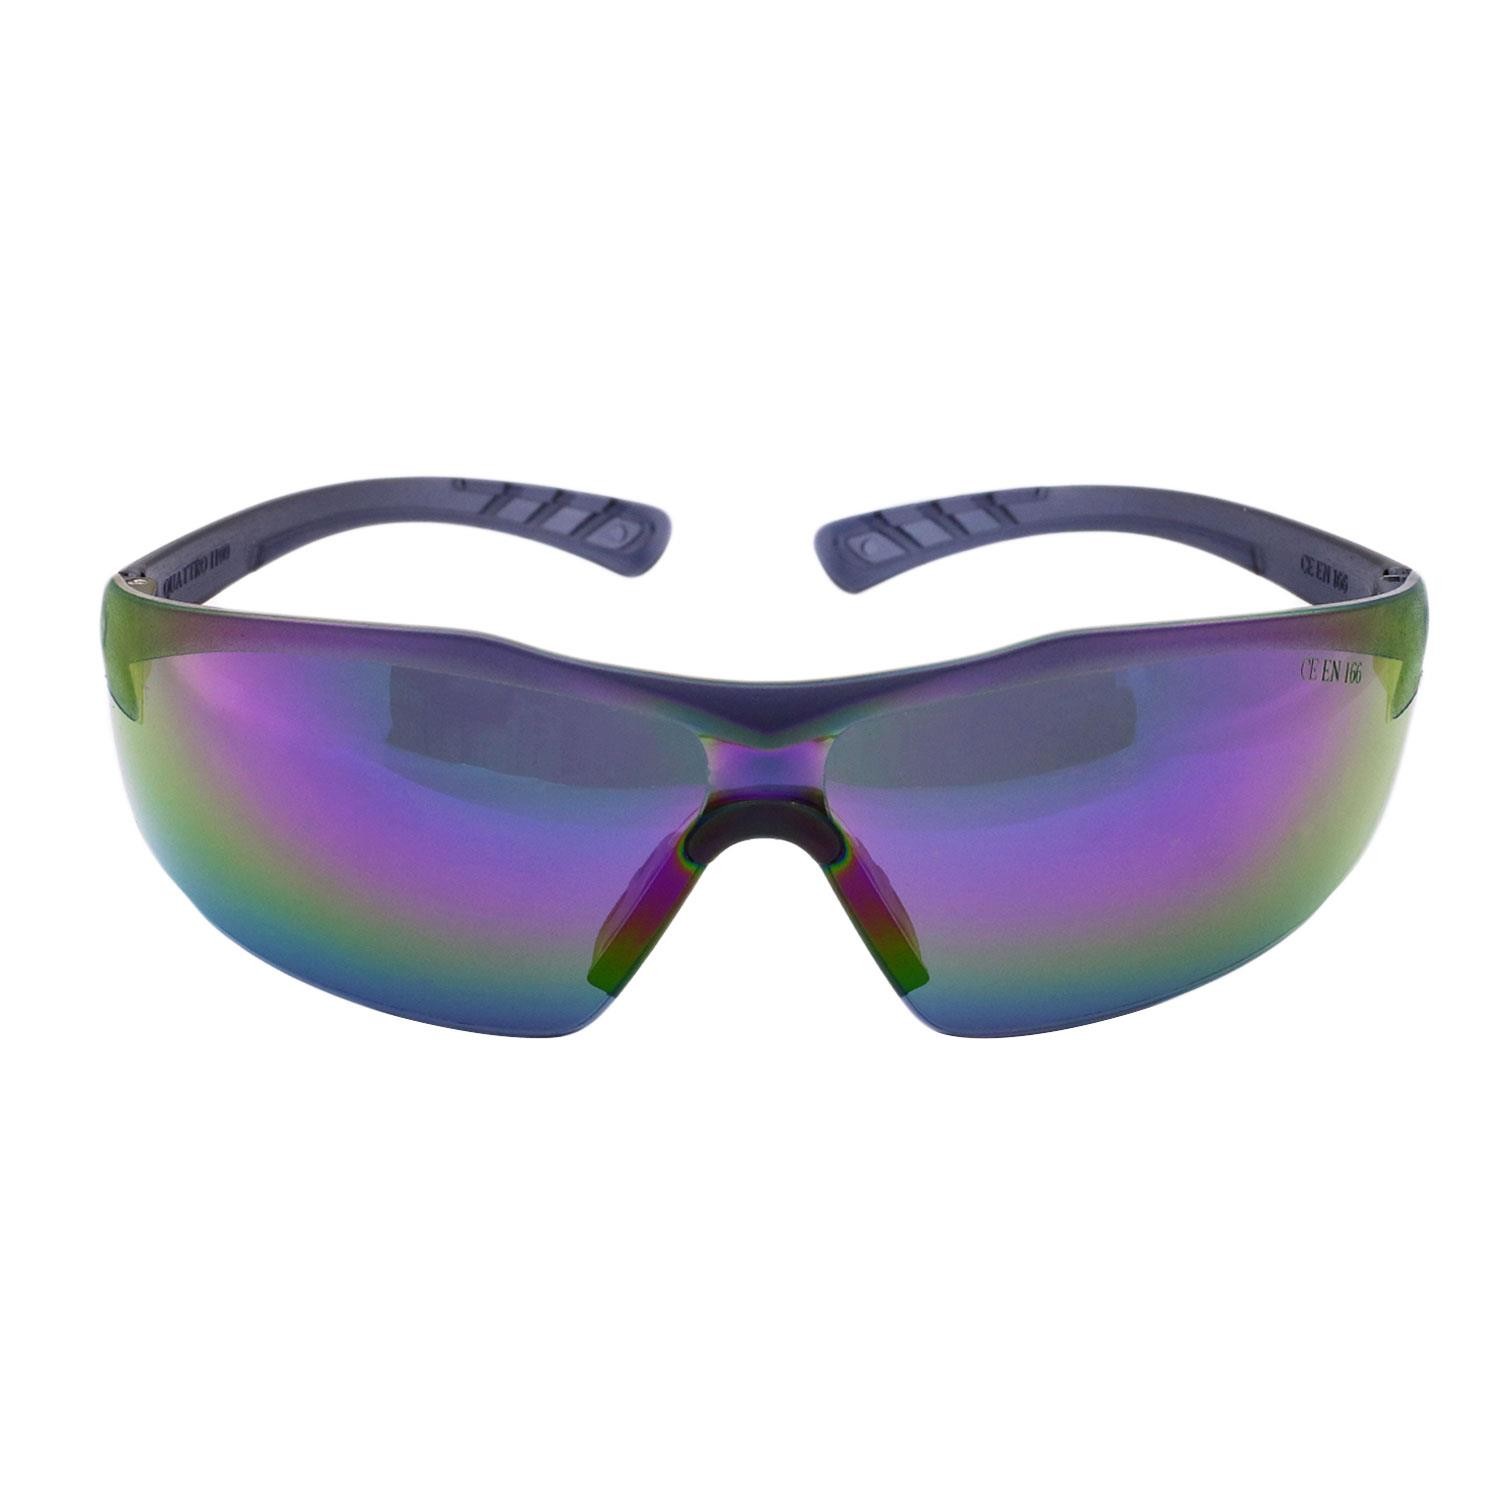 İş Güvenlik Gözlüğü UV Koruyucu Silikonlu Gözlük S1100 Gökkuşağı